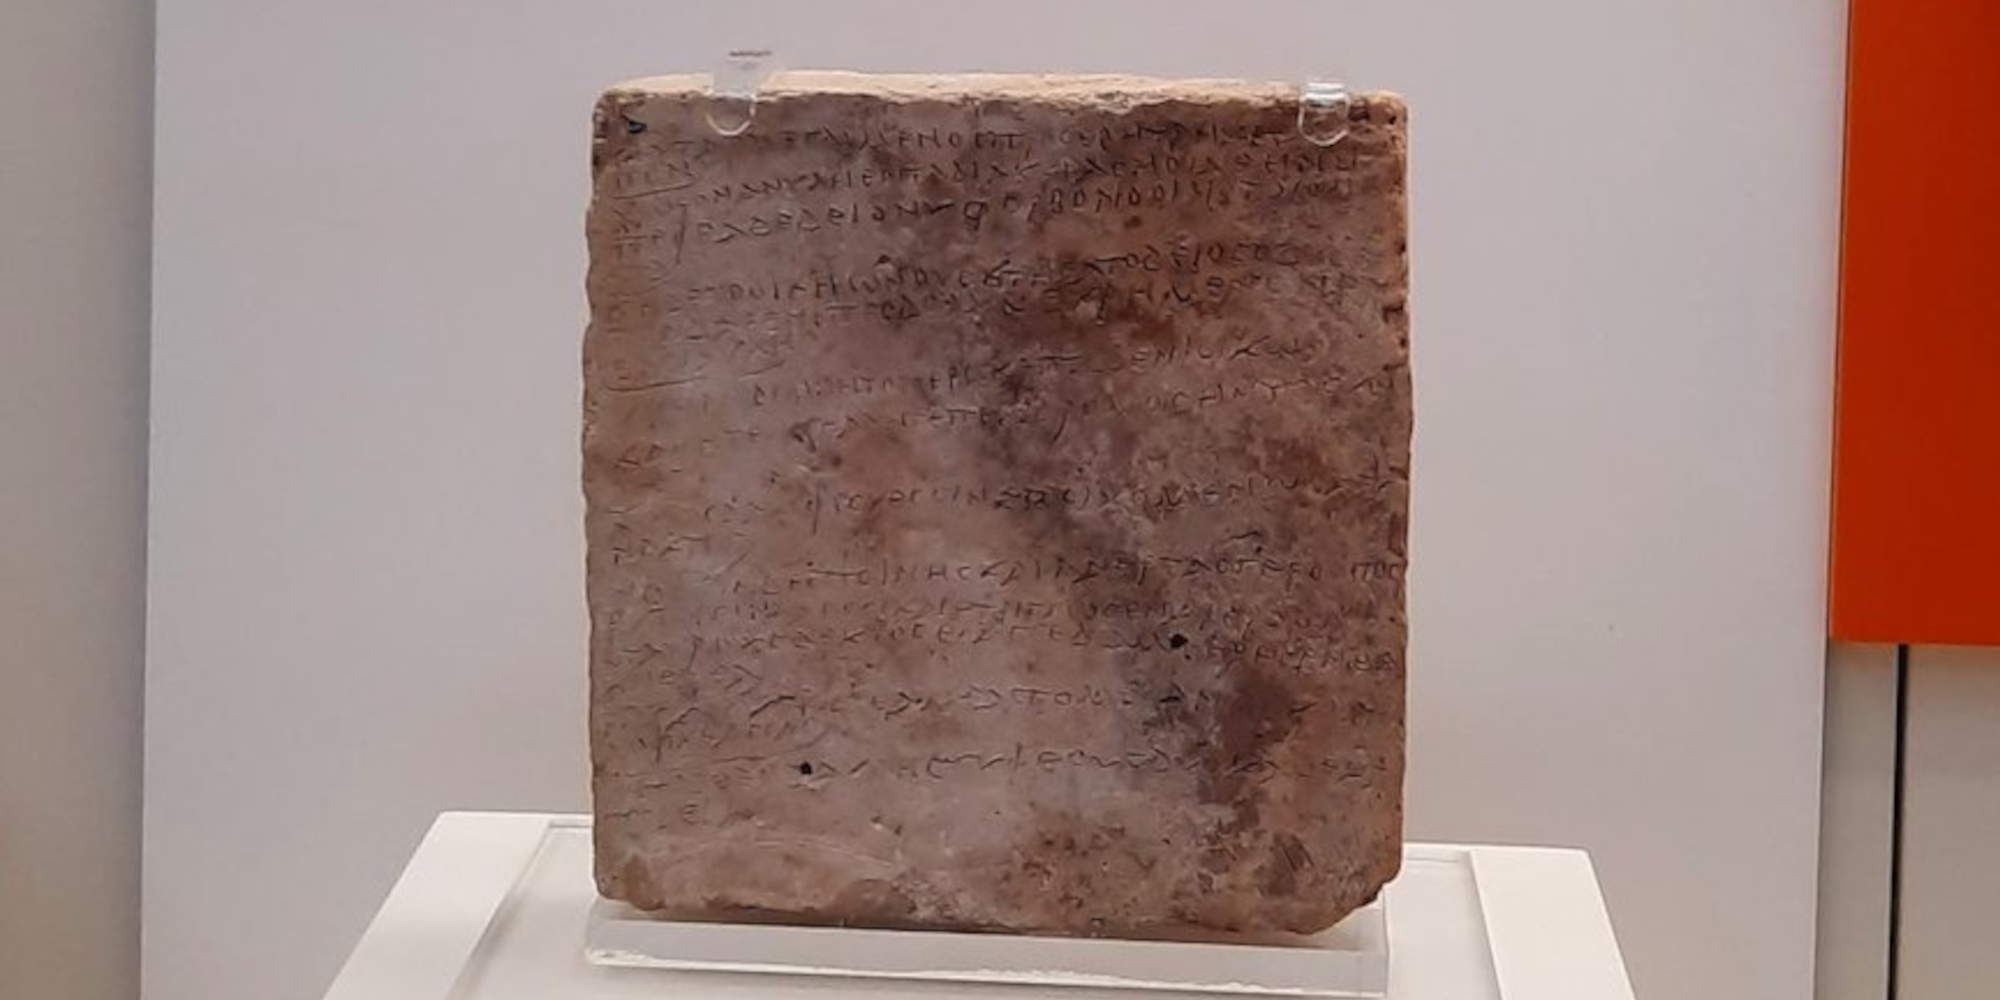 Η πλάκα με τους στίχους από την Οδύσσεια στο αρχαιολογικό μουσείο Ολυμπίας